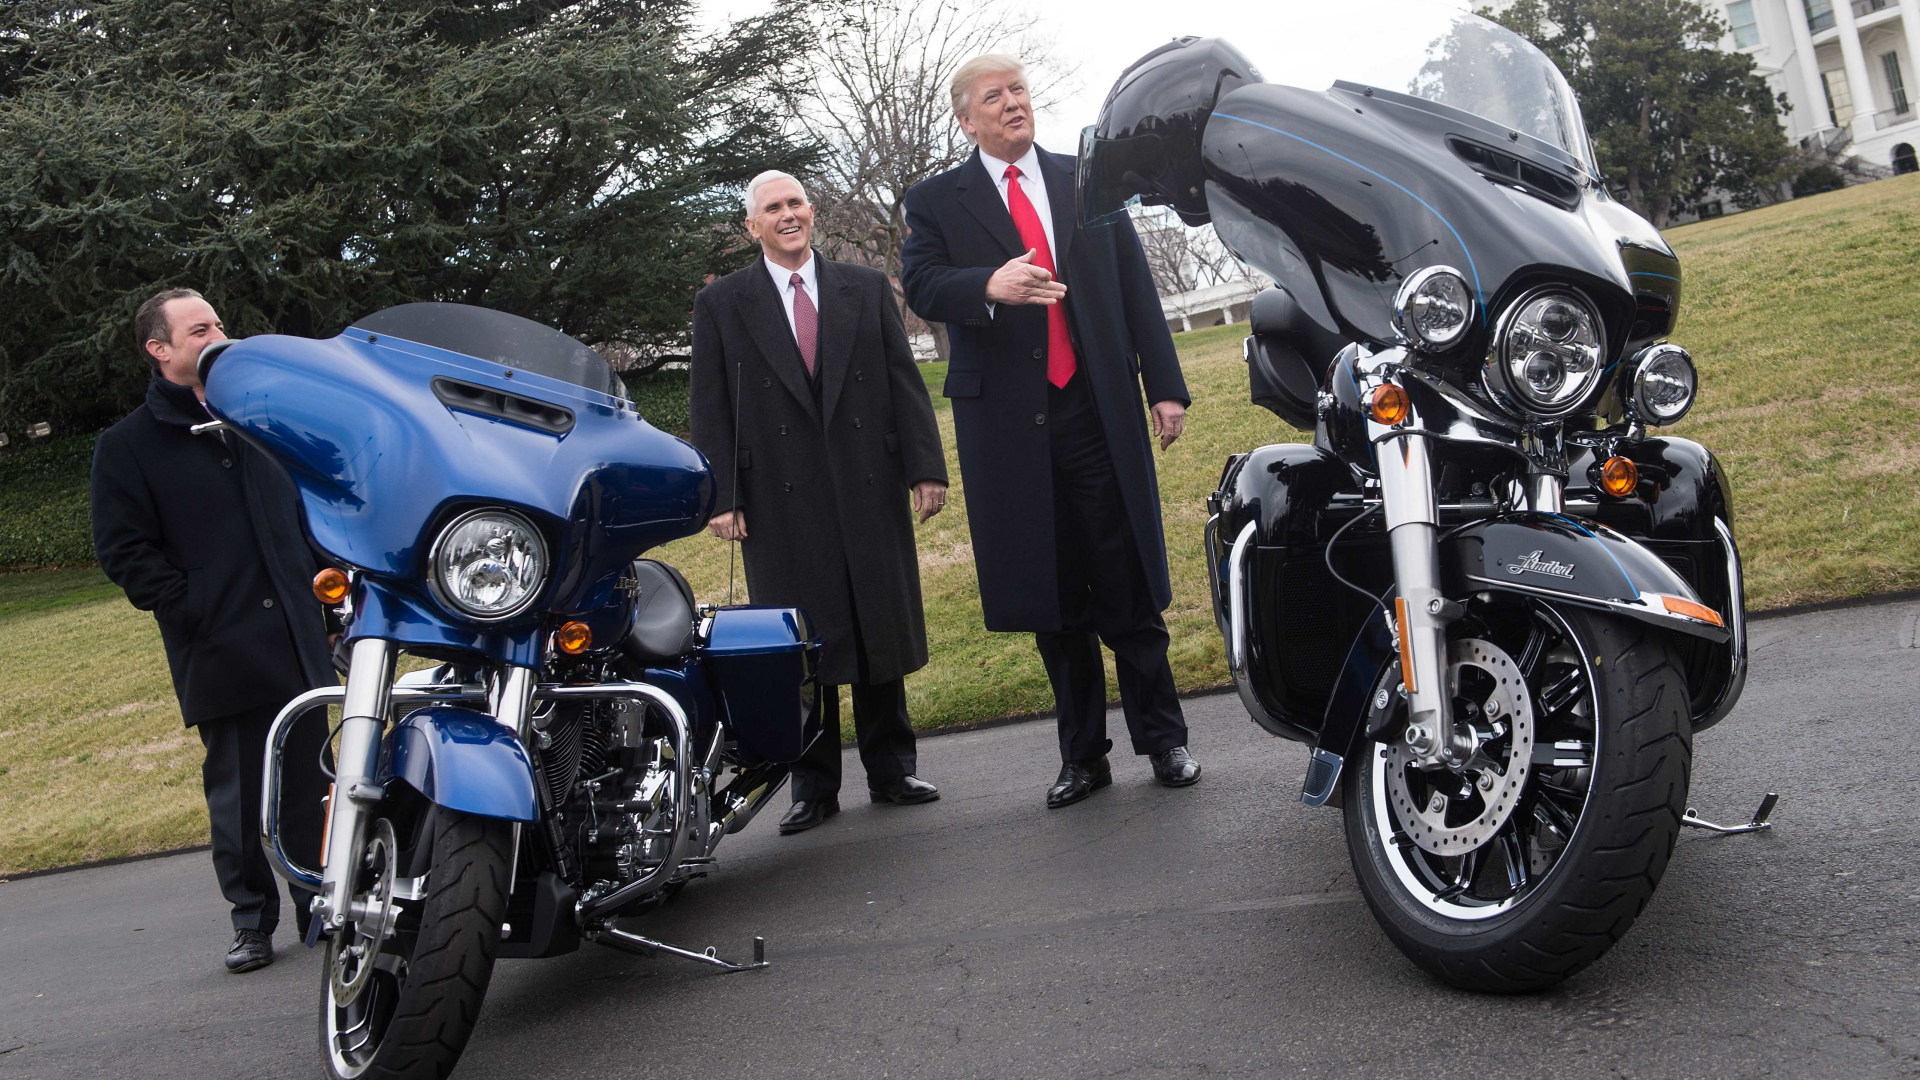 US-Präsident Trump und sein Vize Pence zwischen Harley-Maschinen in Washington